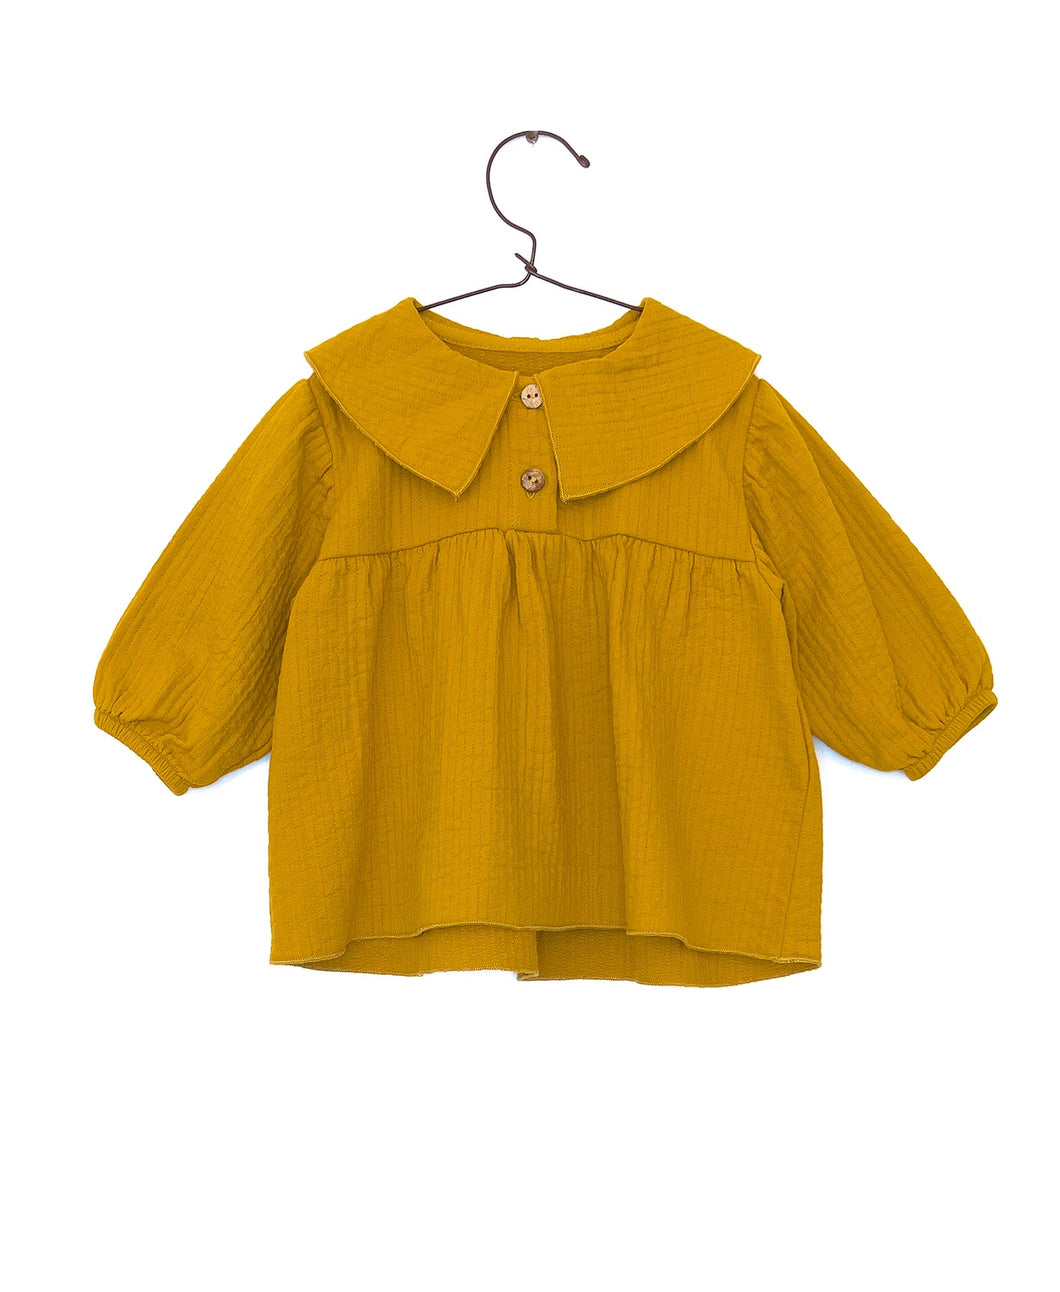 PLAY UP tunica bambina cotone colore giallo zafferano